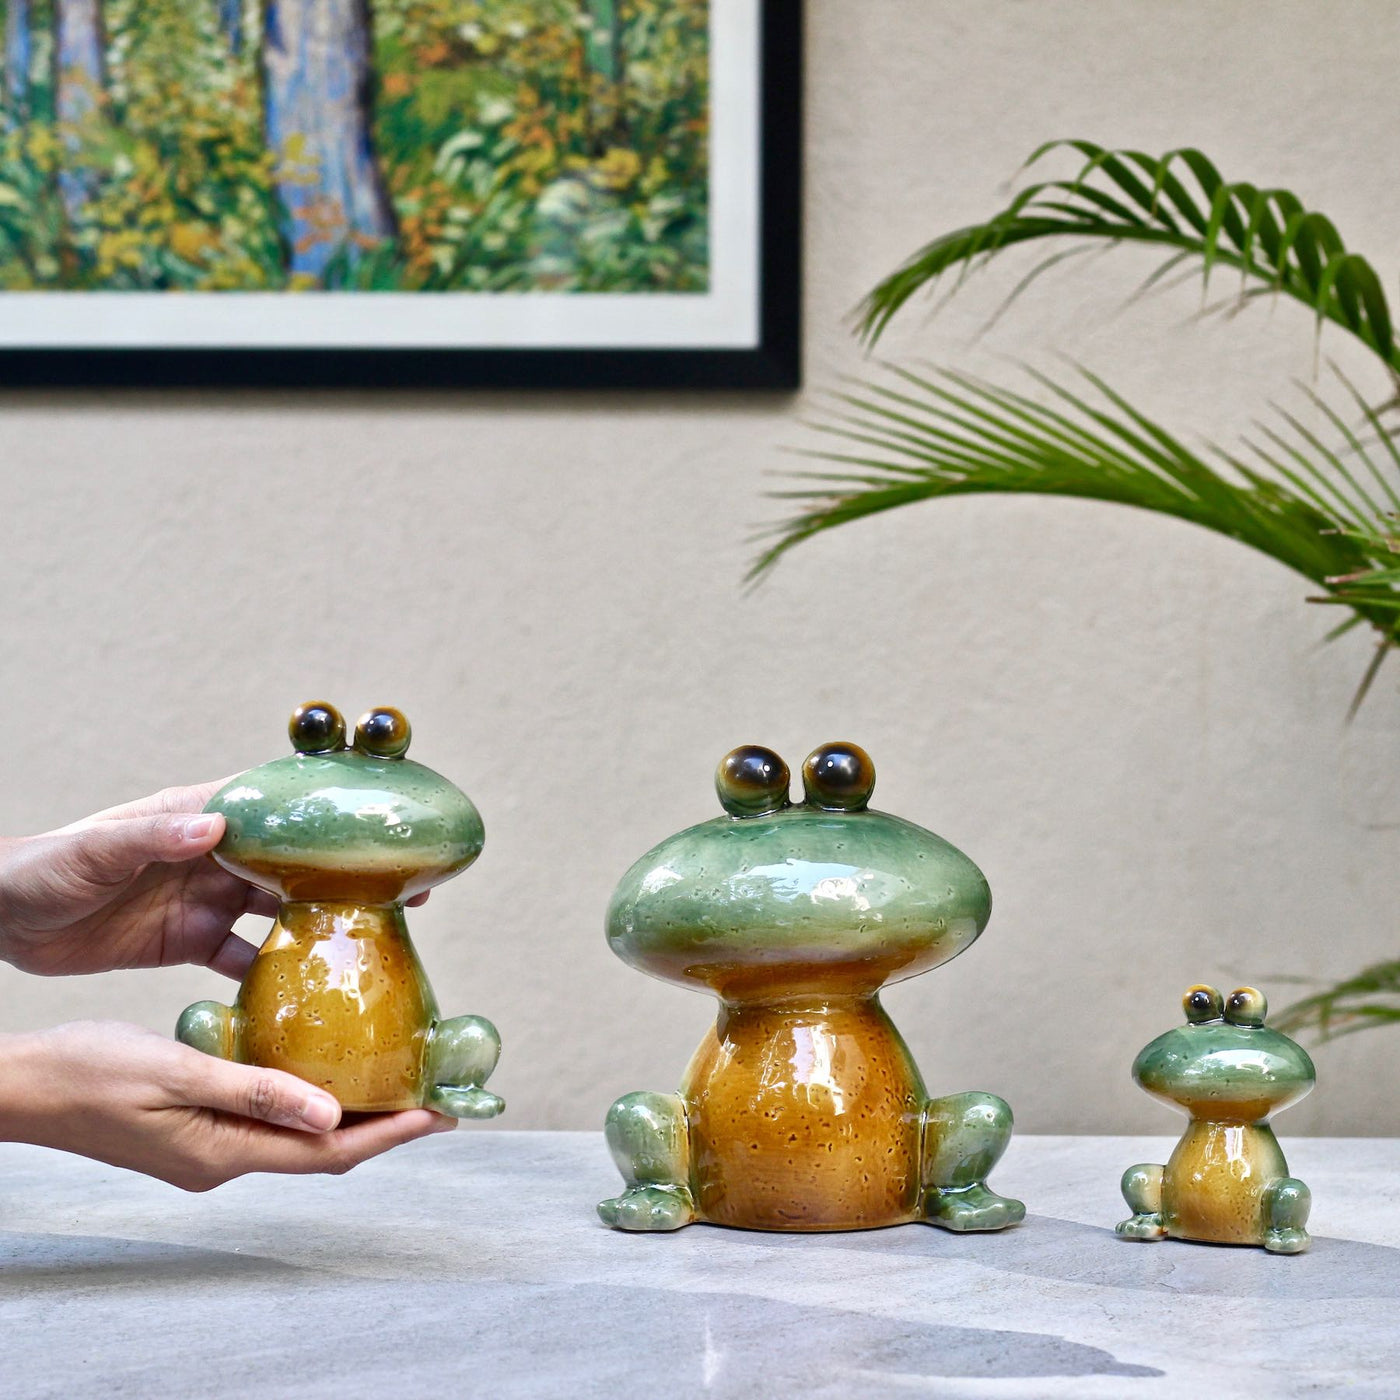 frog family ceramic showpiece